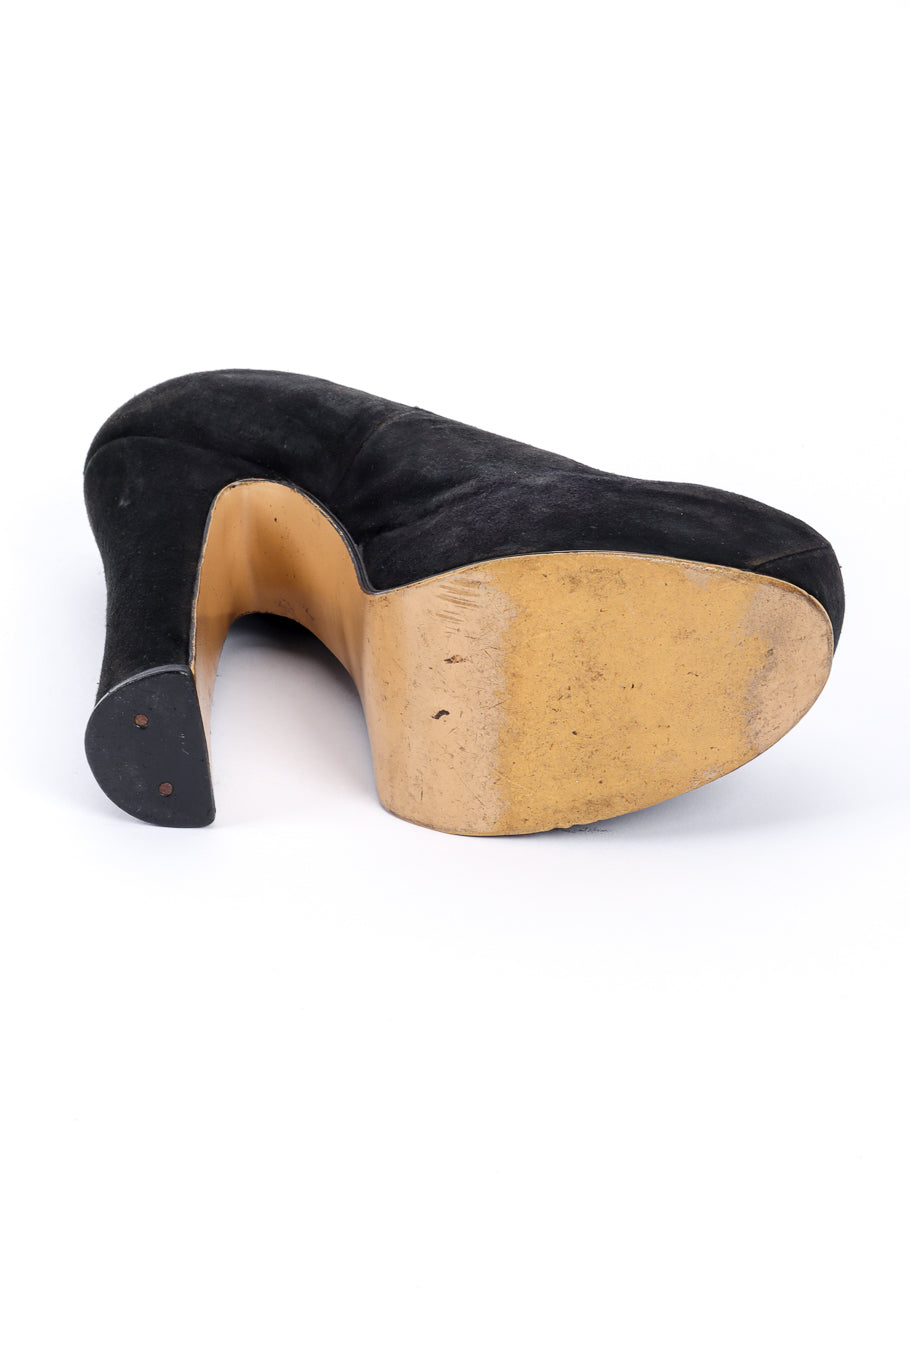 Vintage Vivienne Westwood 1993 F/W Elevated Suede Court Shoe left shoe outsole @recessla